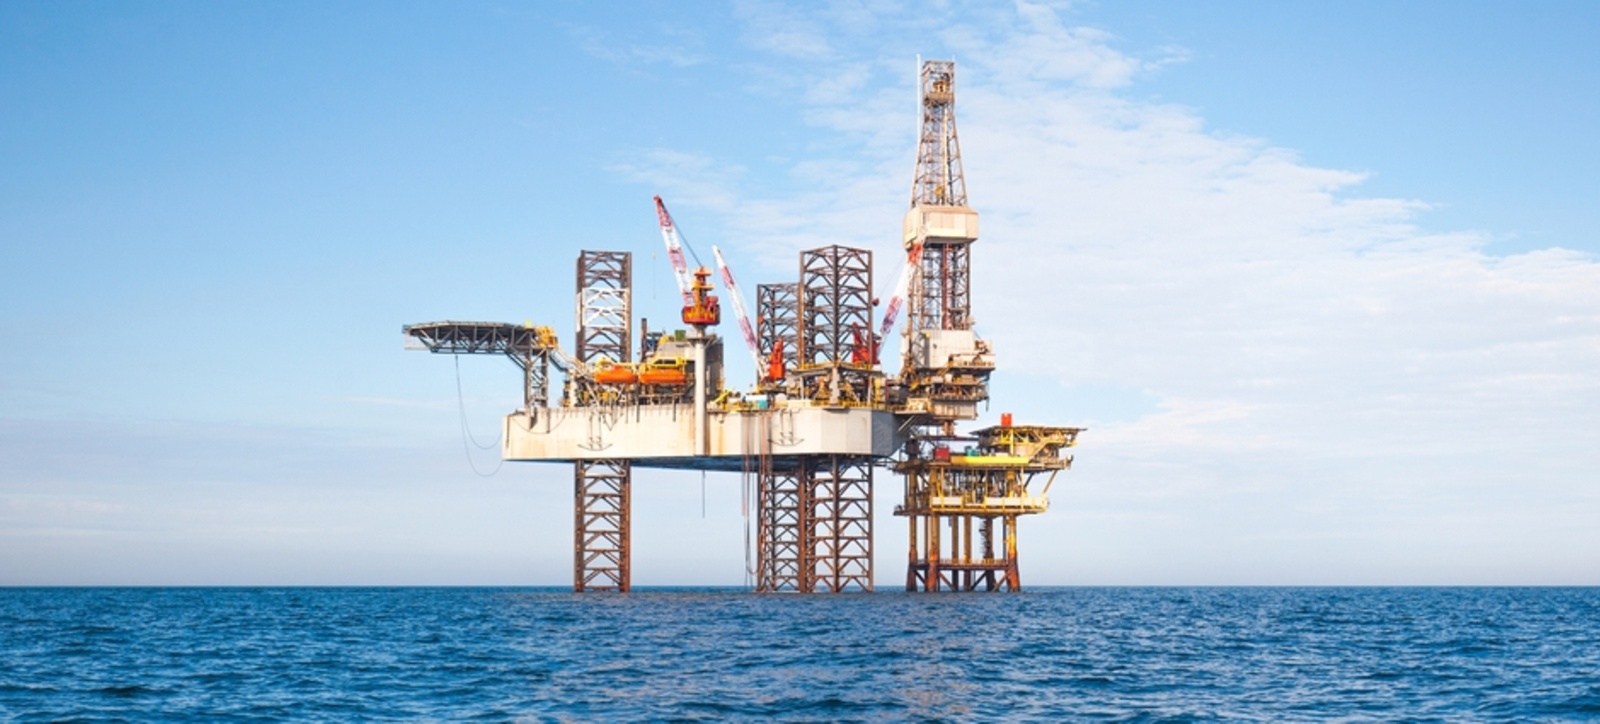 oil rigs in the sea